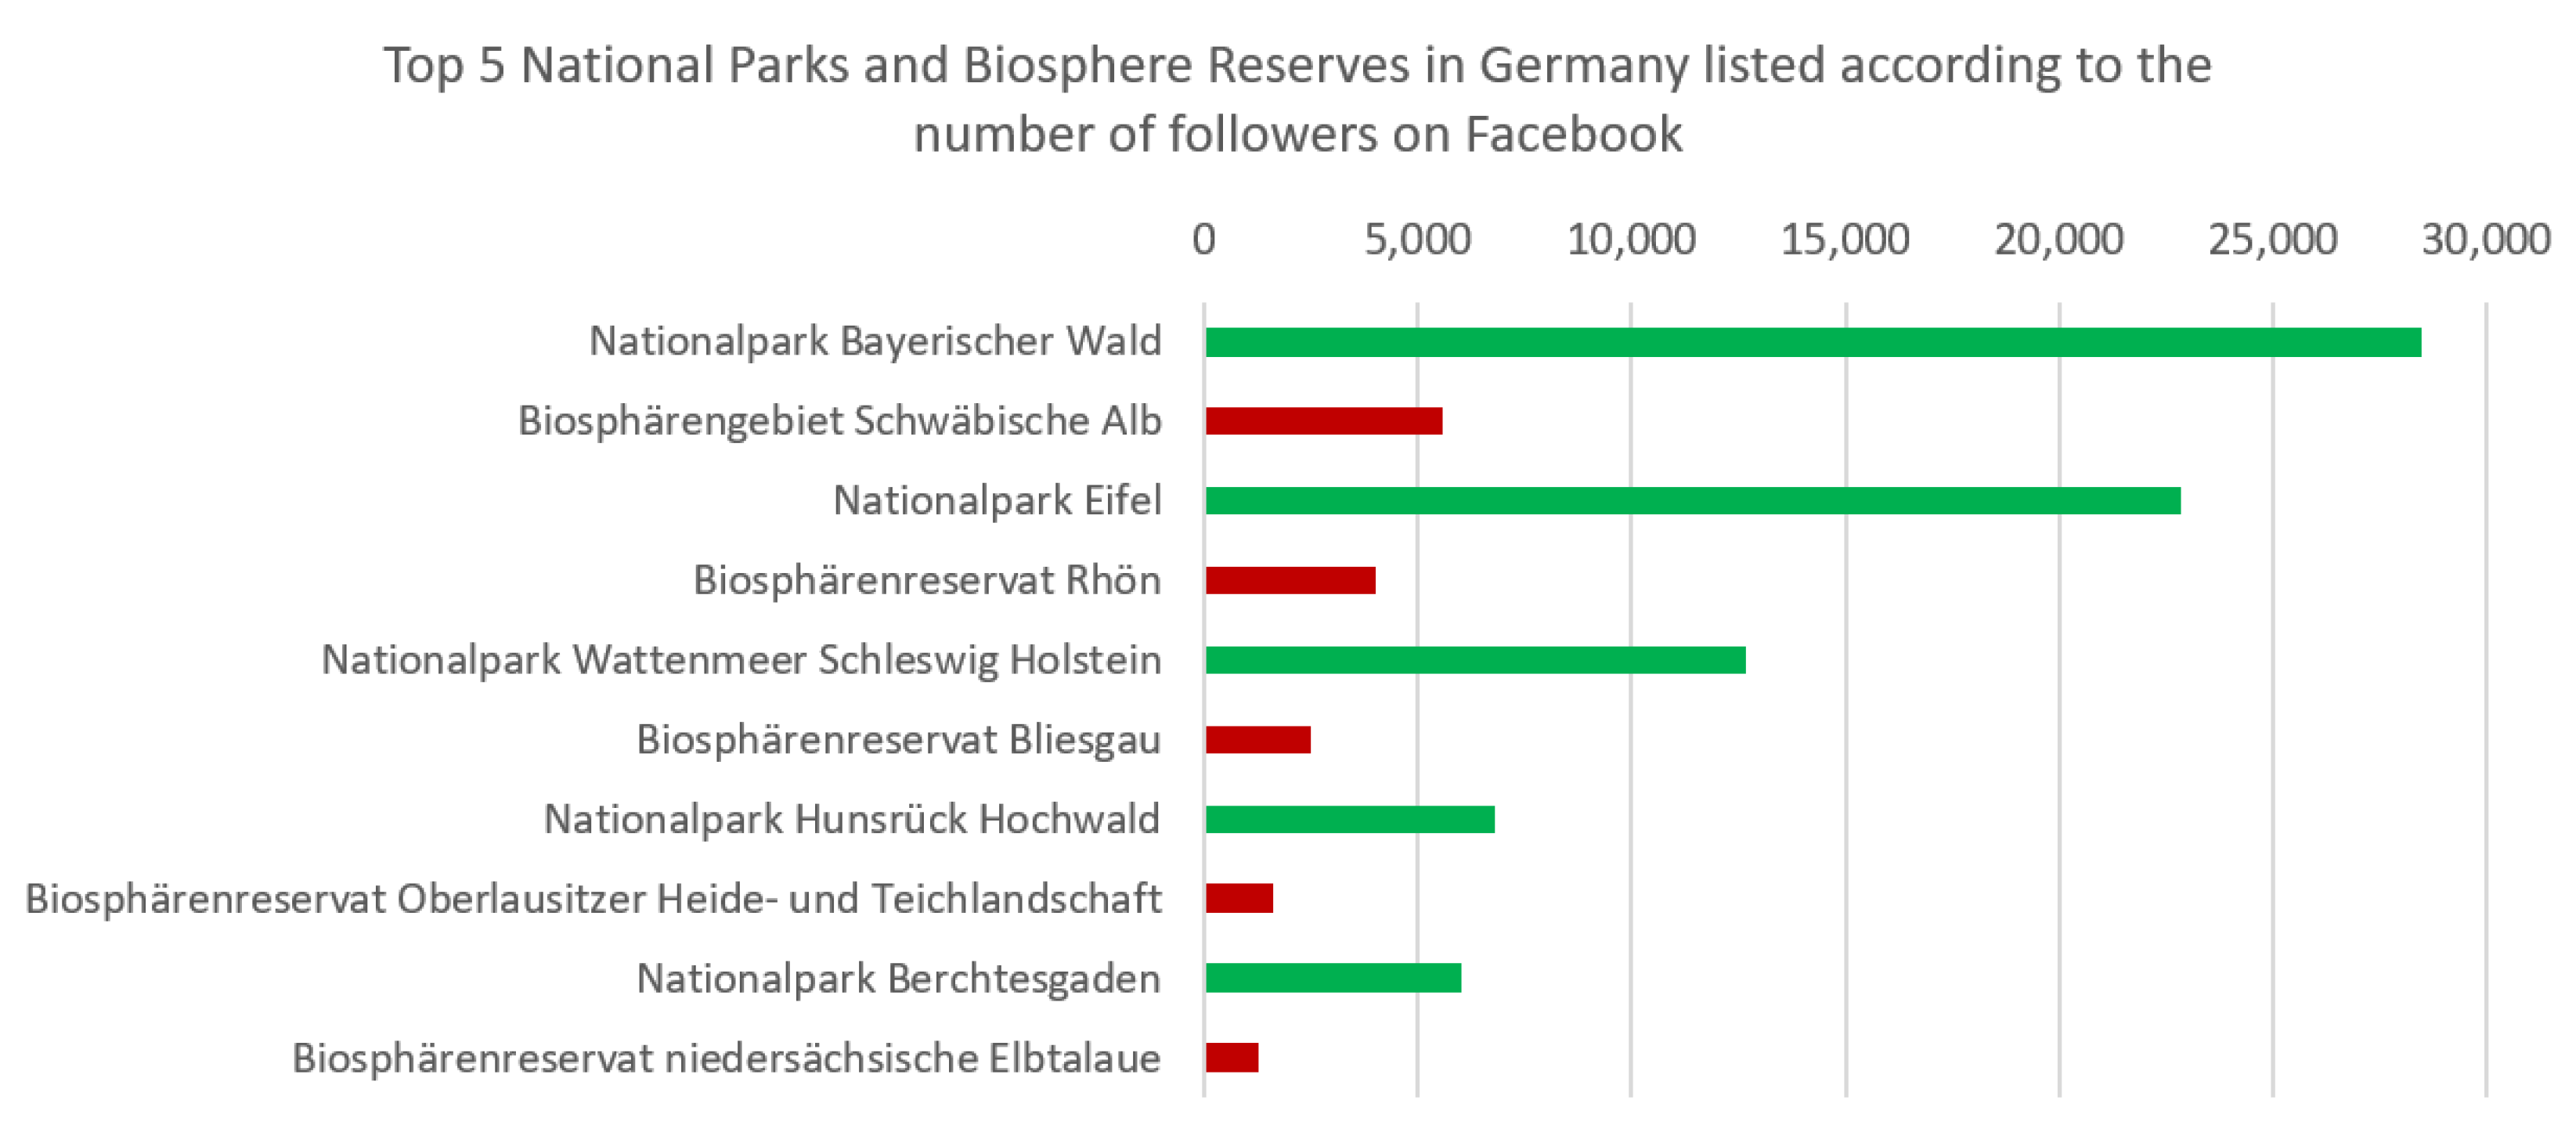 biosphere reserves